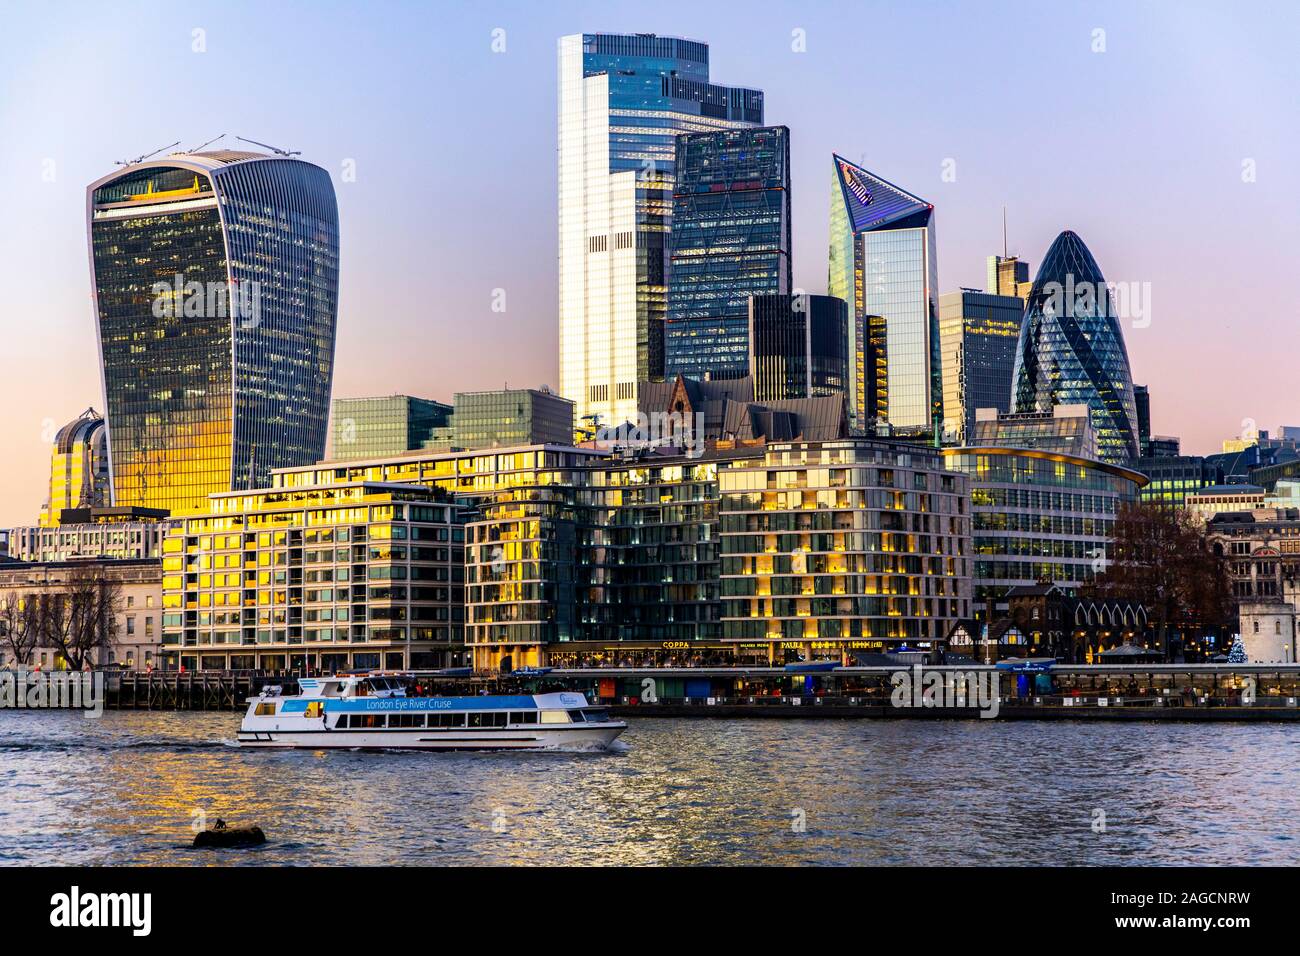 Skyline des Bankenviertel von Londres, Grossbritannien, Fluss Themse, Foto de stock